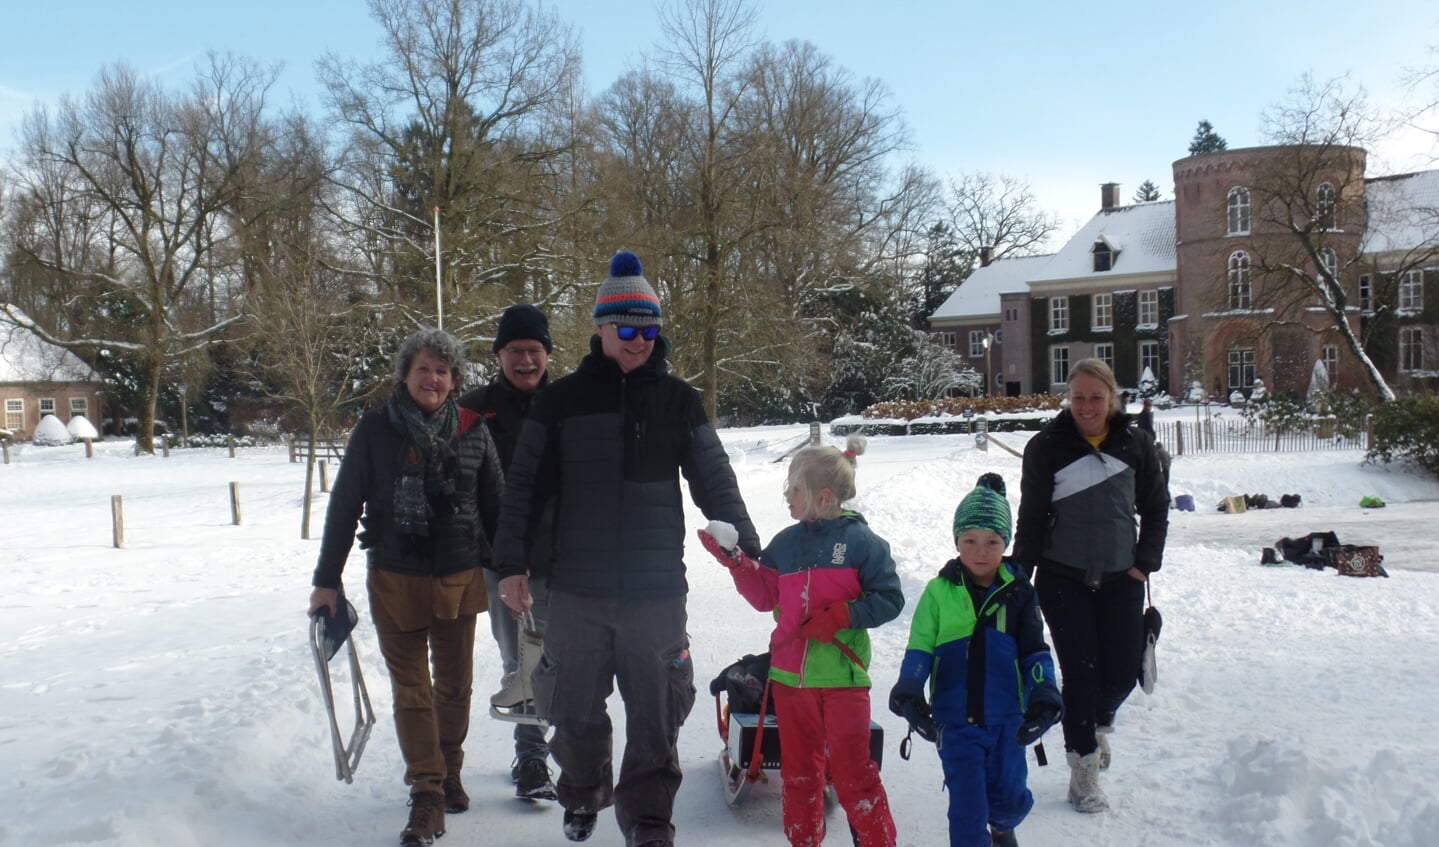 De familie Addink vermaakte zich opperbest op de gracht en in de sneeuw bij kasteel De Wildenborch. Foto: Jan Hendriksen 